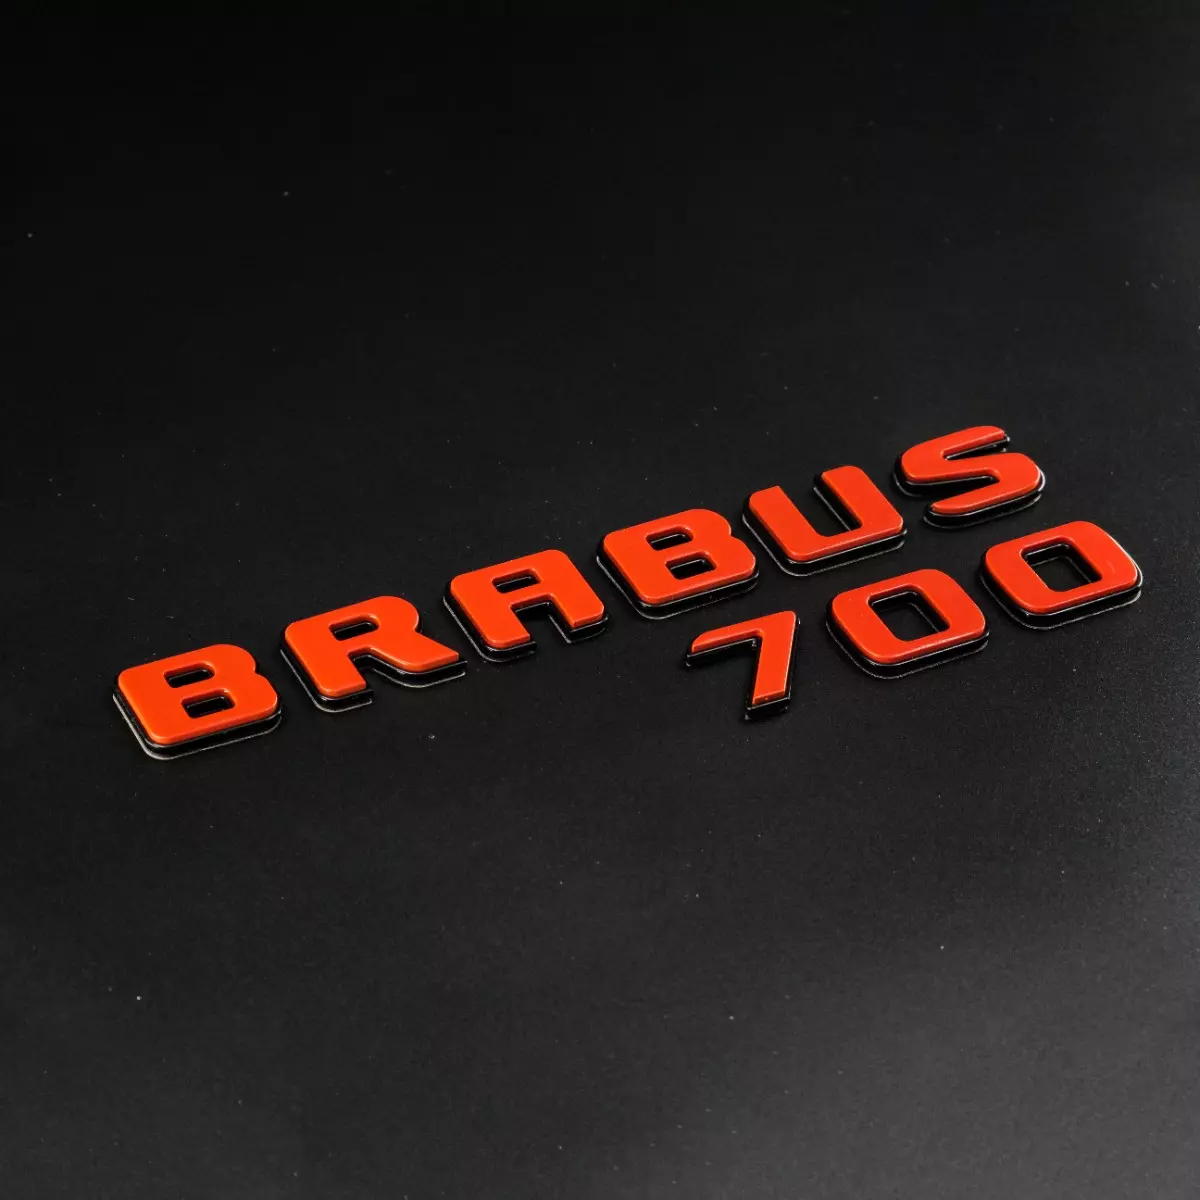 Orange with Black Brabus 700 Badges Emblems Set for Mercedes-Benz Vehicles